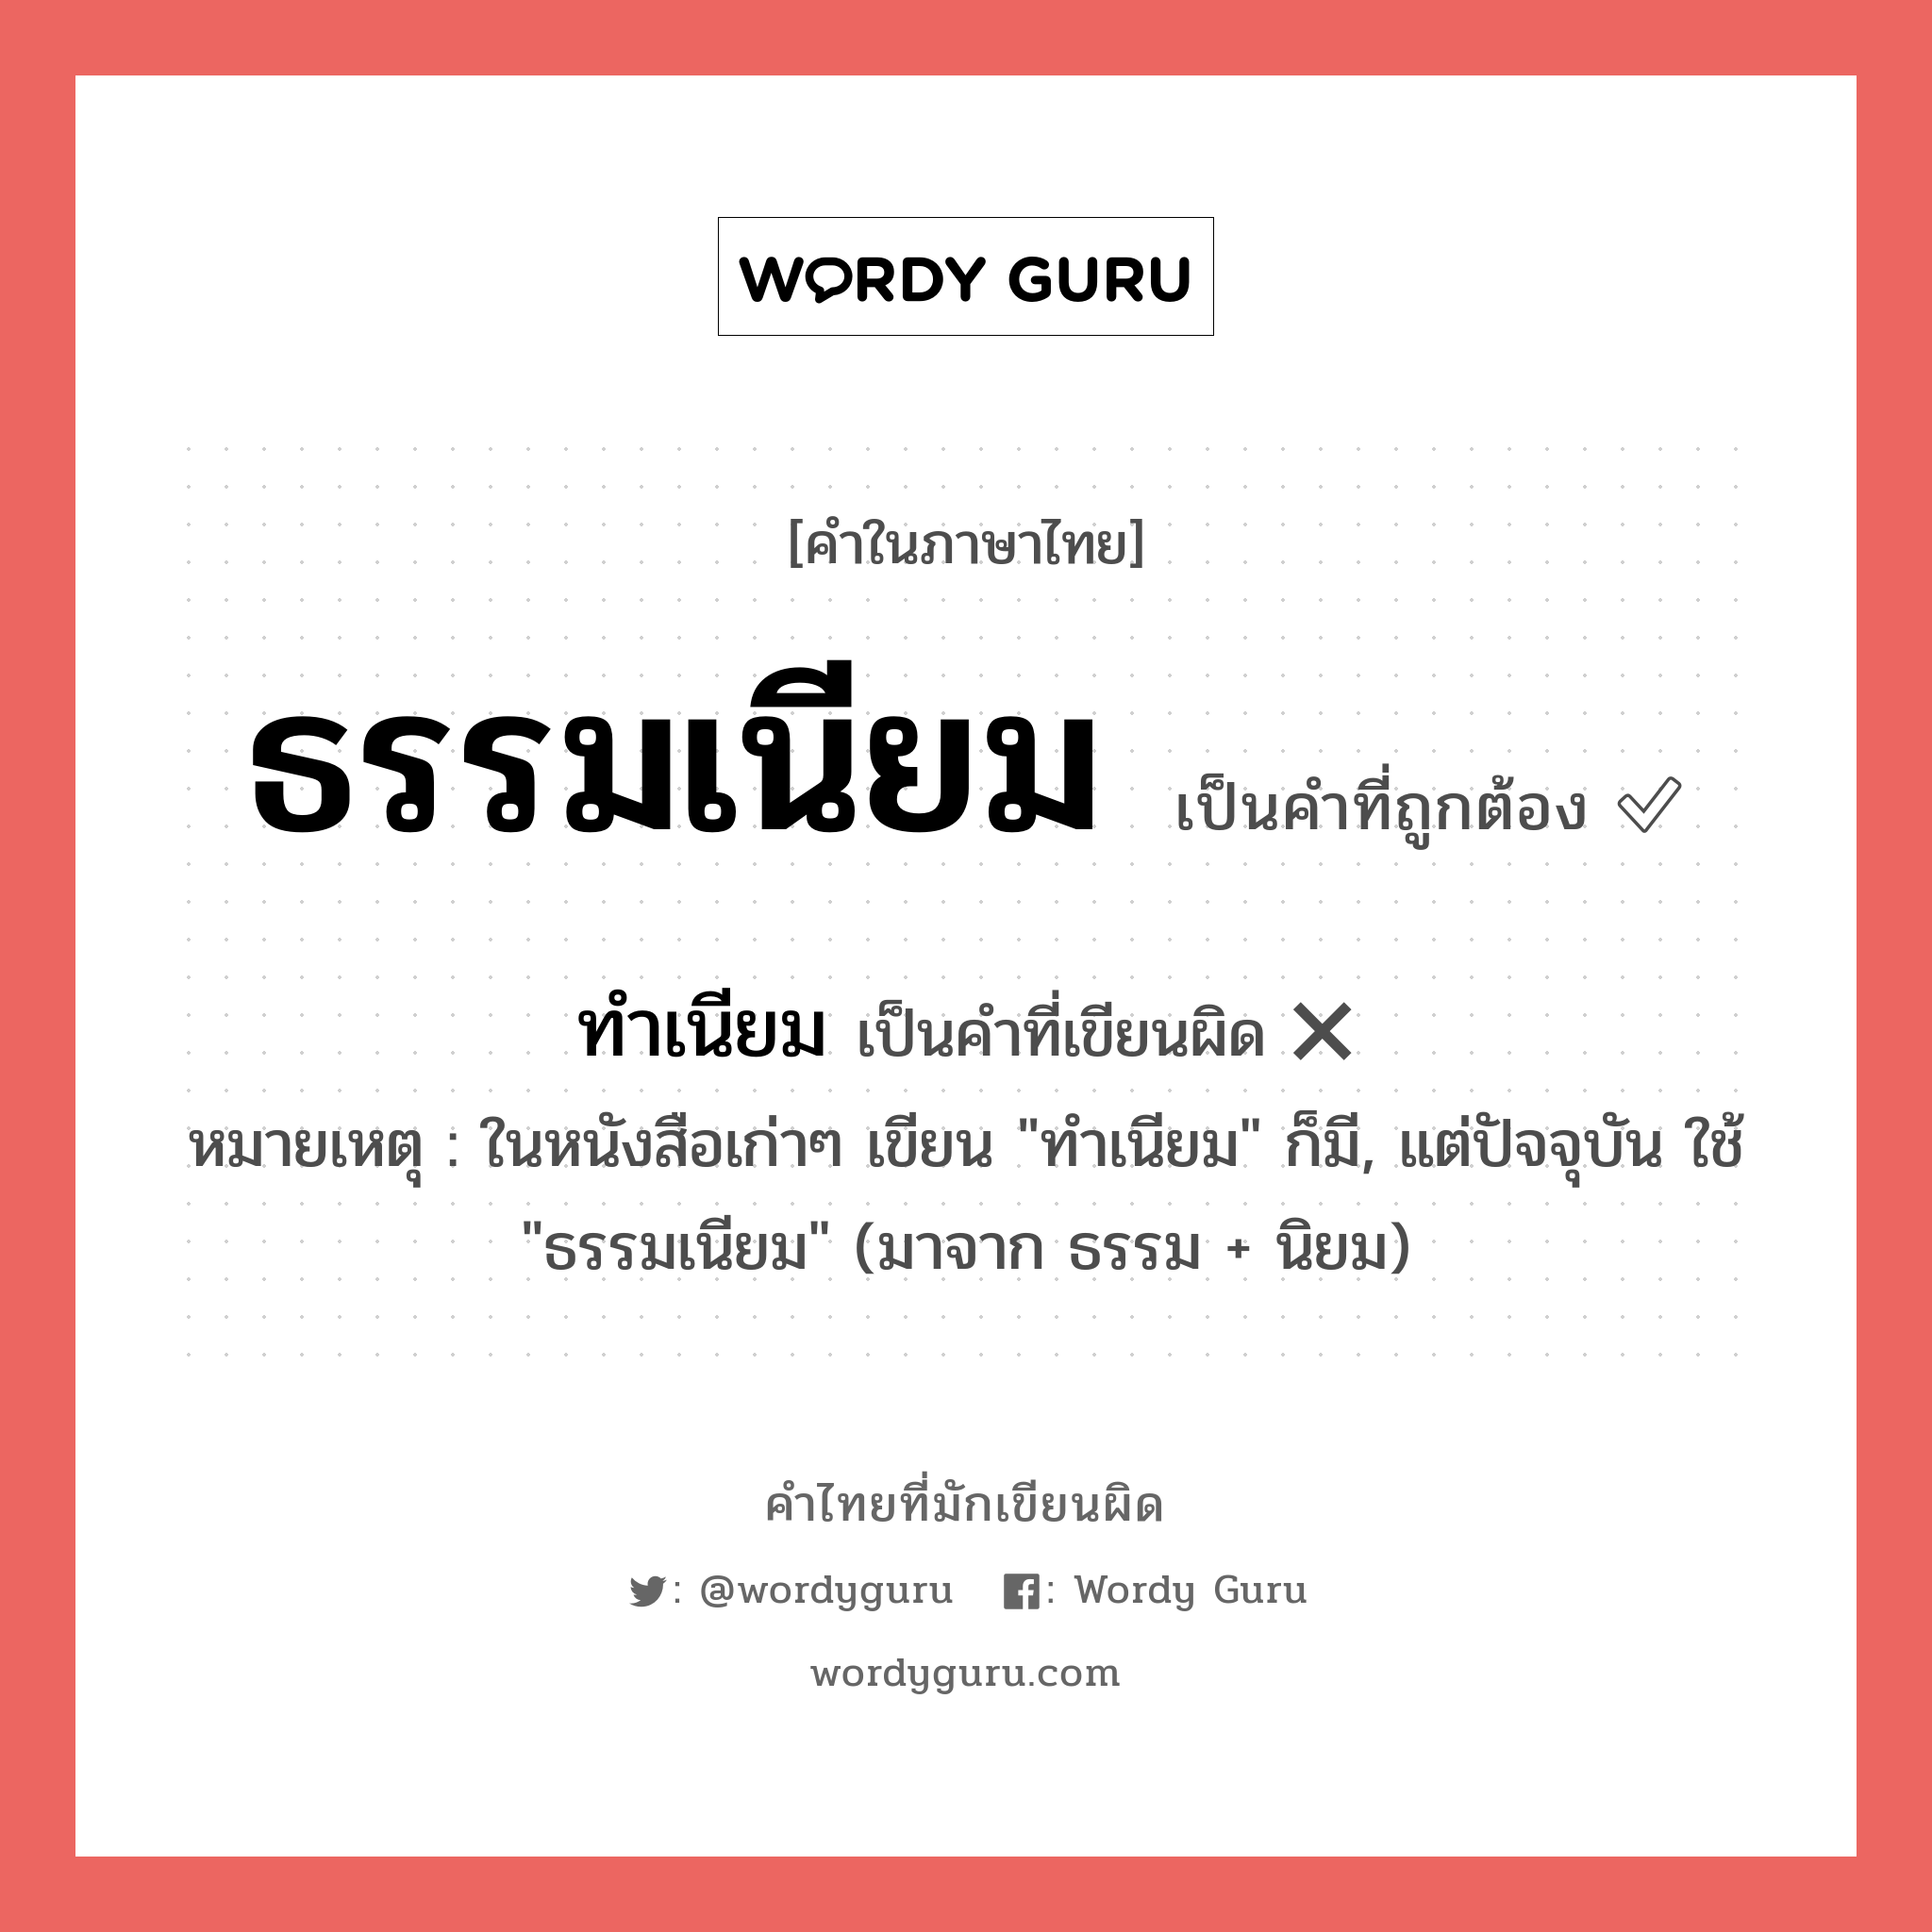 ทำเนียม หรือ ธรรมเนียม คำไหนเขียนถูก?, คำในภาษาไทยที่มักเขียนผิด ทำเนียม คำที่ผิด ❌ ธรรมเนียม หมายเหตุ ในหนังสือเก่าๆ เขียน "ทำเนียม" ก็มี, แต่ปัจจุบัน ใช้ "ธรรมเนียม" (มาจาก ธรรม + นิยม)